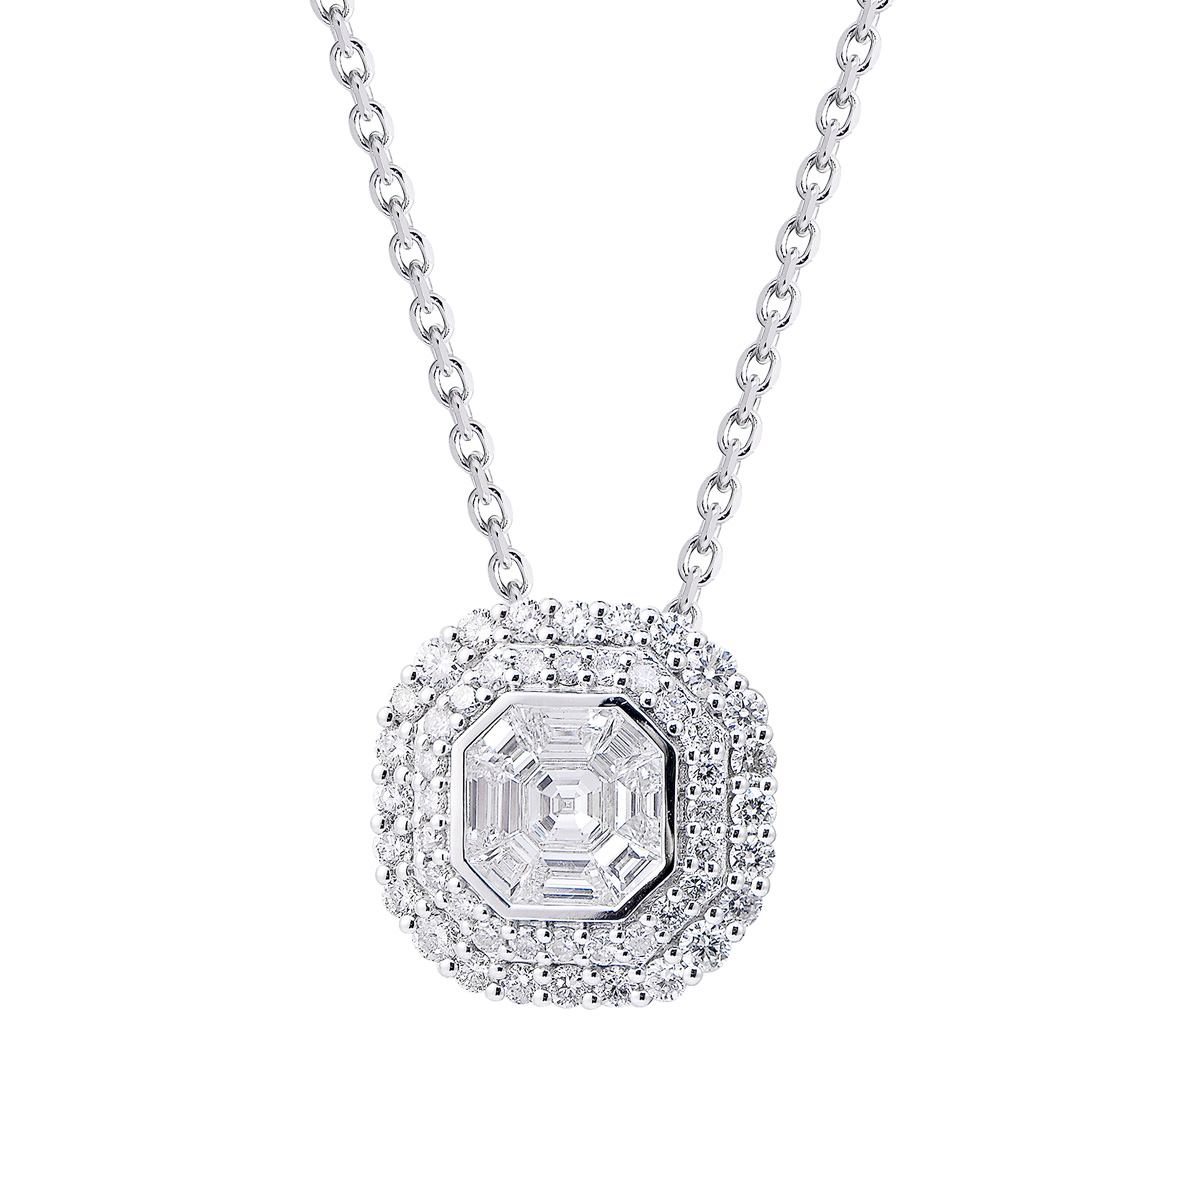 AM25859U 18K white gold Asscher cut diamond necklace